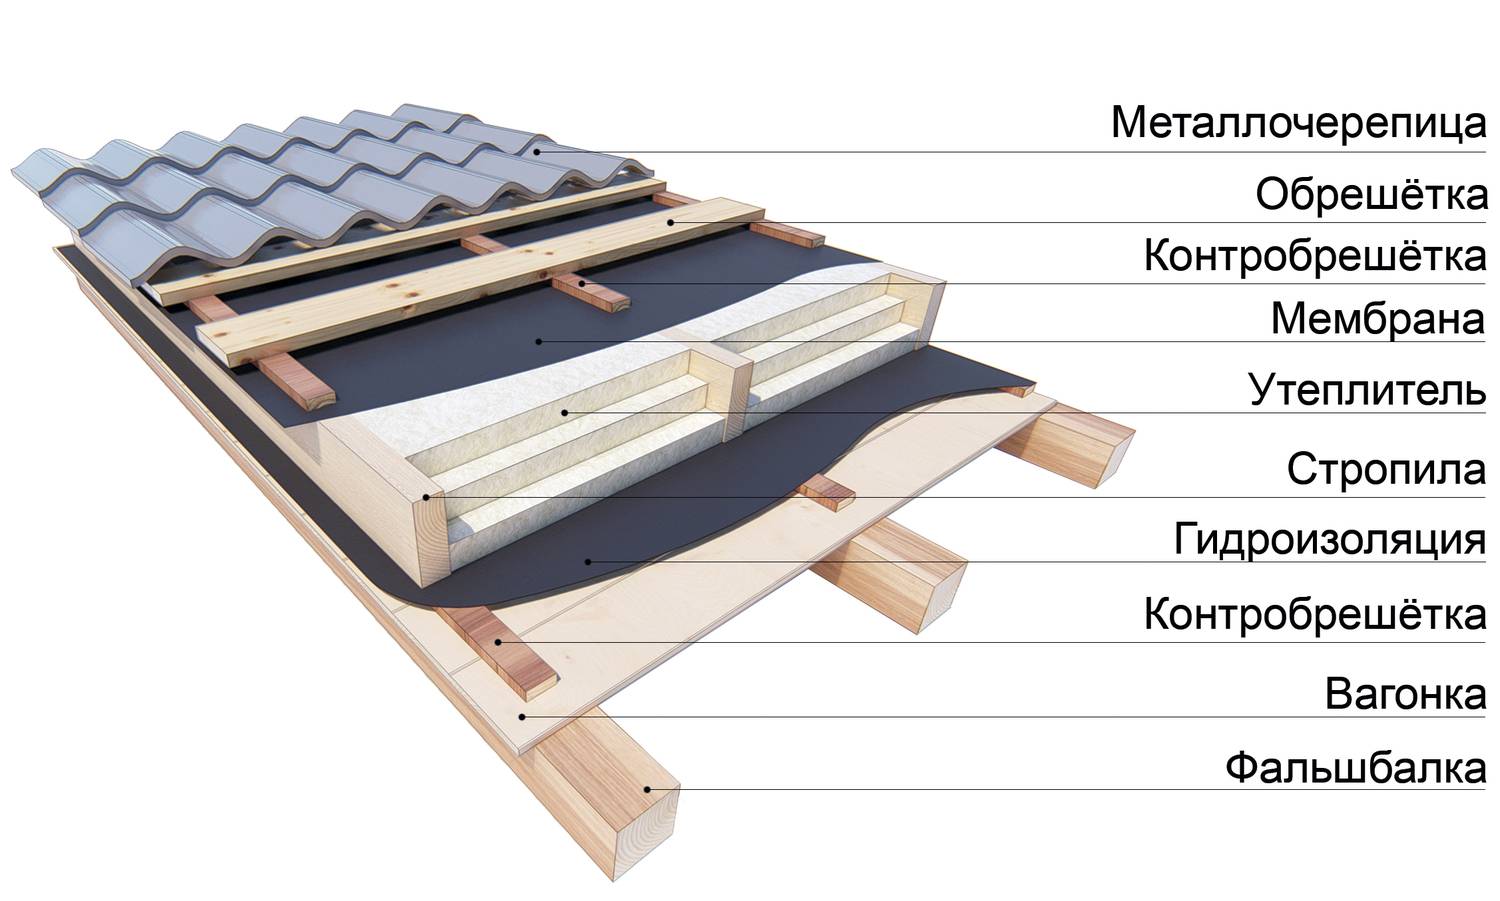 Обрешетка крыши: монтаж, размеры и устройство доски на кровле, шаг обрешетки в конструкции крыши и расчет сплошного основания